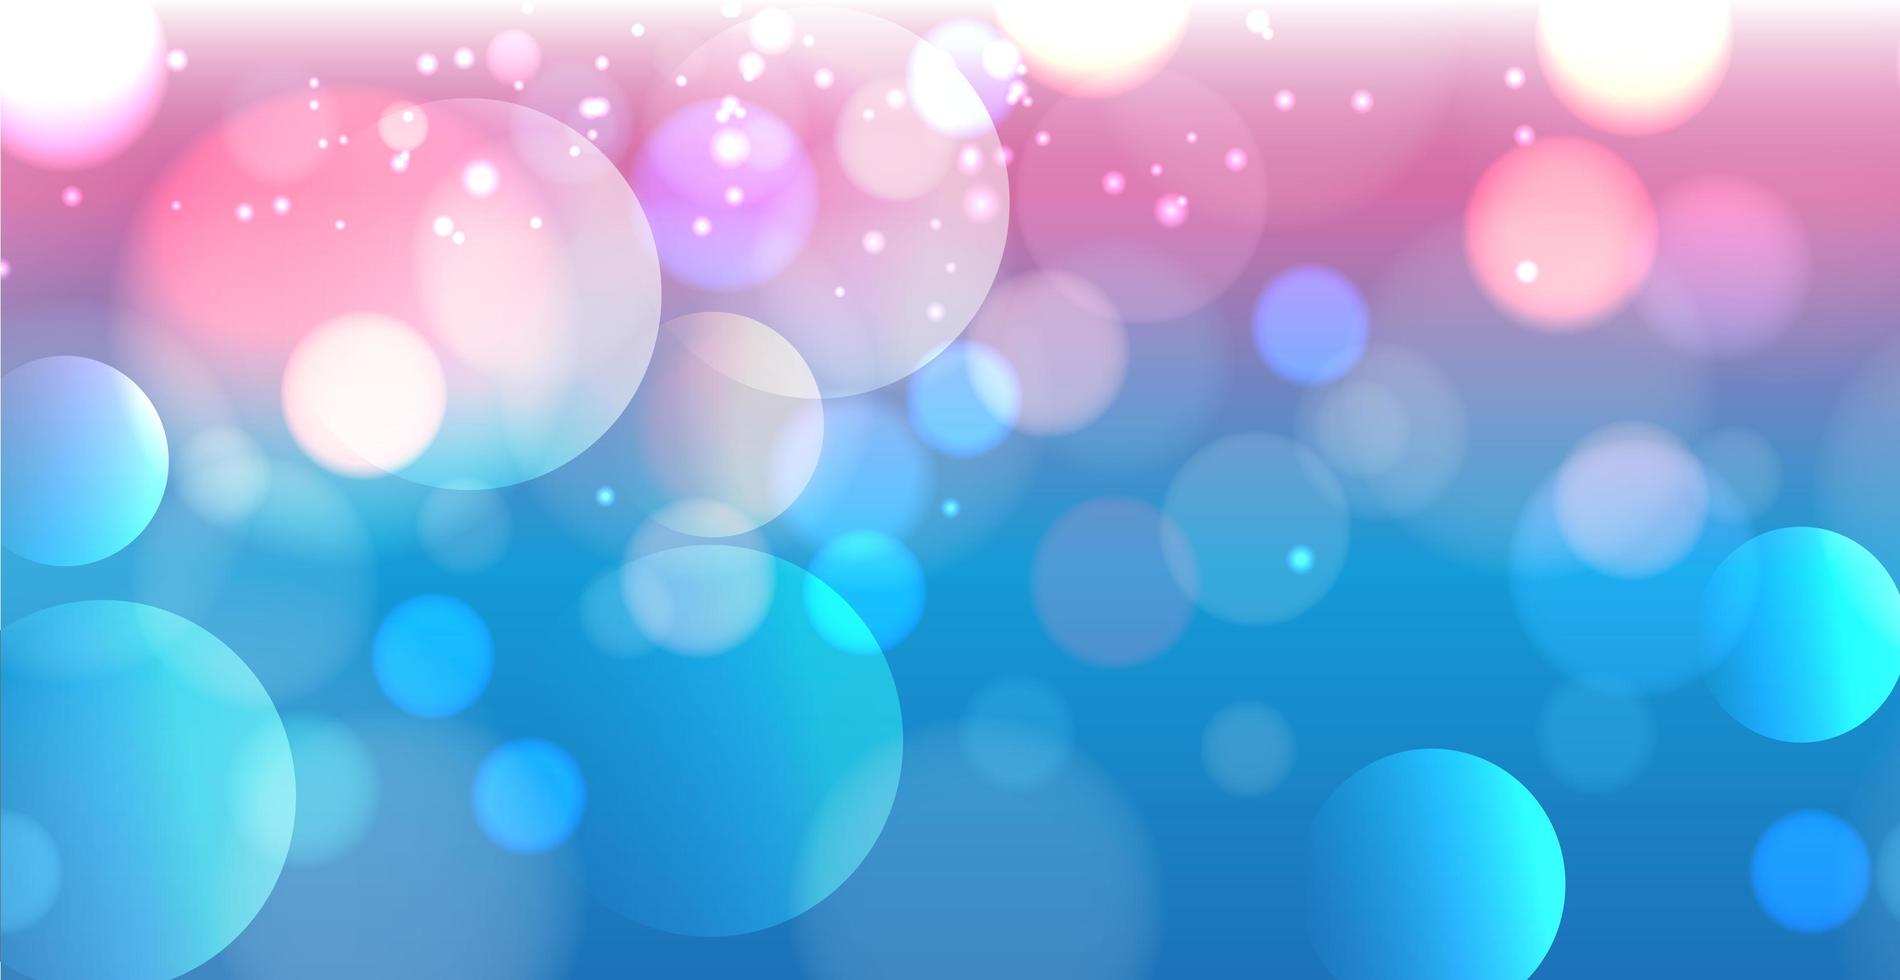 abstrait bleu bokeh avec des cercles défocalisés et des paillettes. élément de décoration pour les vacances de noël et du nouvel an, cartes de voeux, bannières web, affiches - image vectorielle vecteur